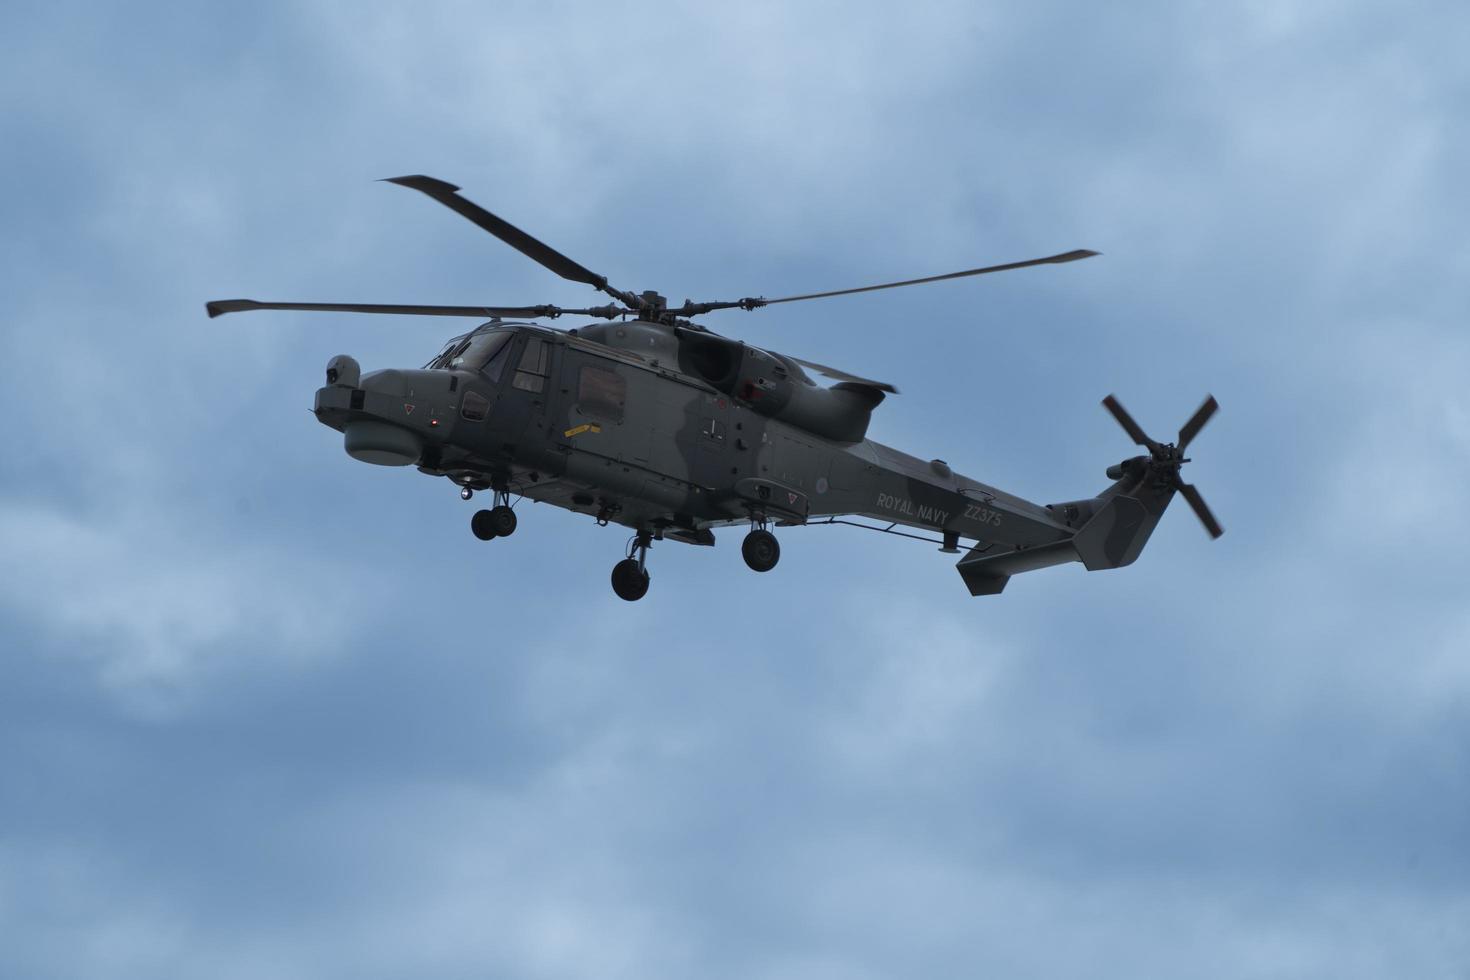 festival de l'air de bournemouth en hélicoptère lynx wildcat 2022 photo